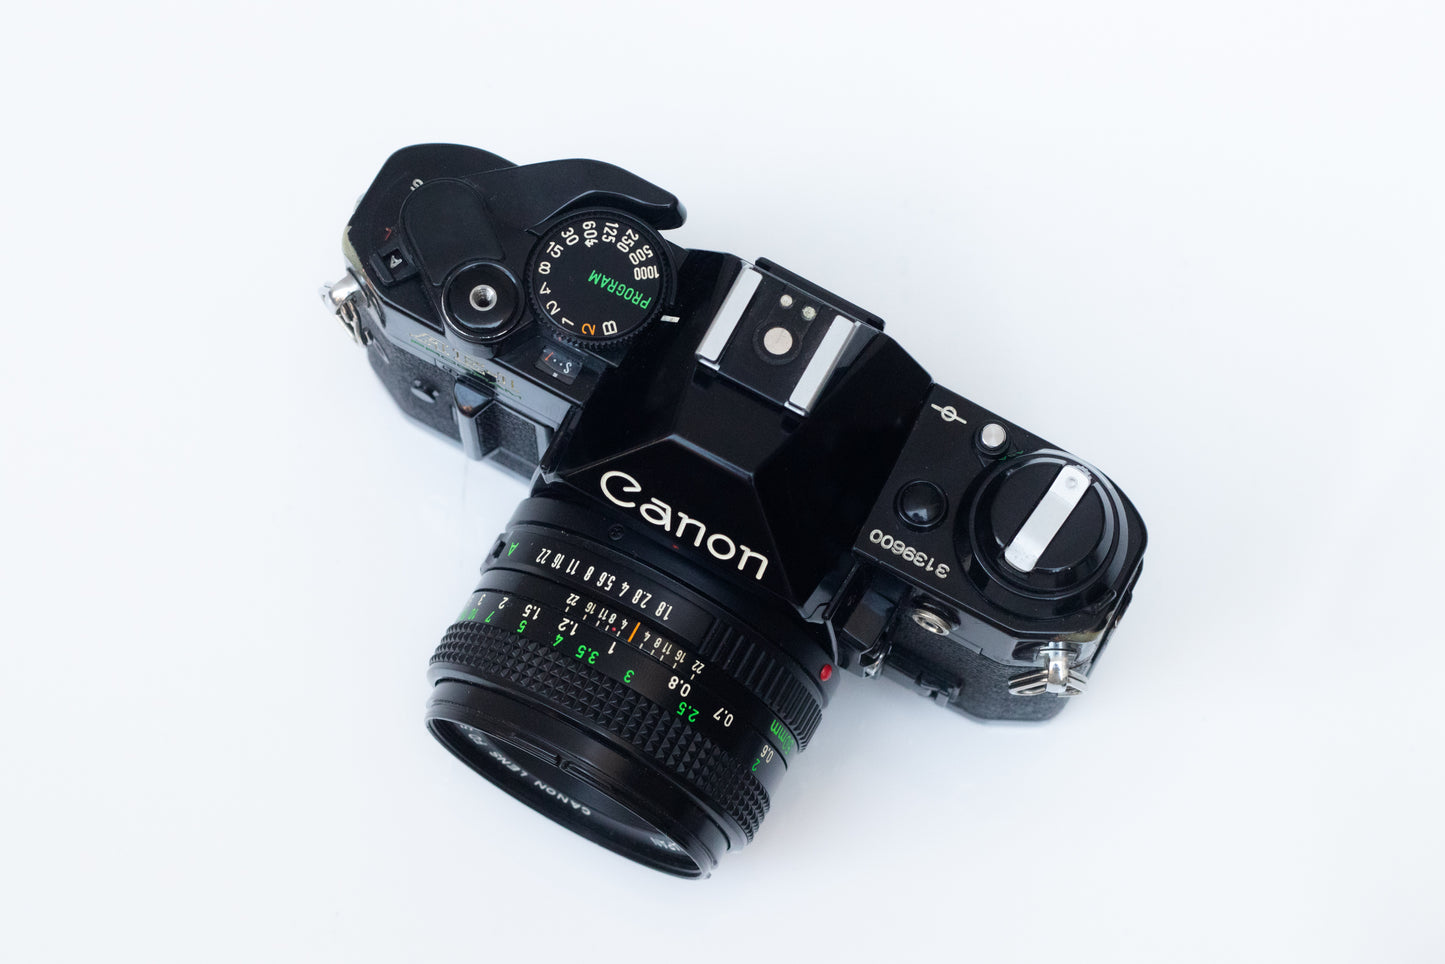 Near Mint Canon AE-1 Program Black | 35mm Camera Kit | Ready to Shoot | 50mm F1.8 Lens |